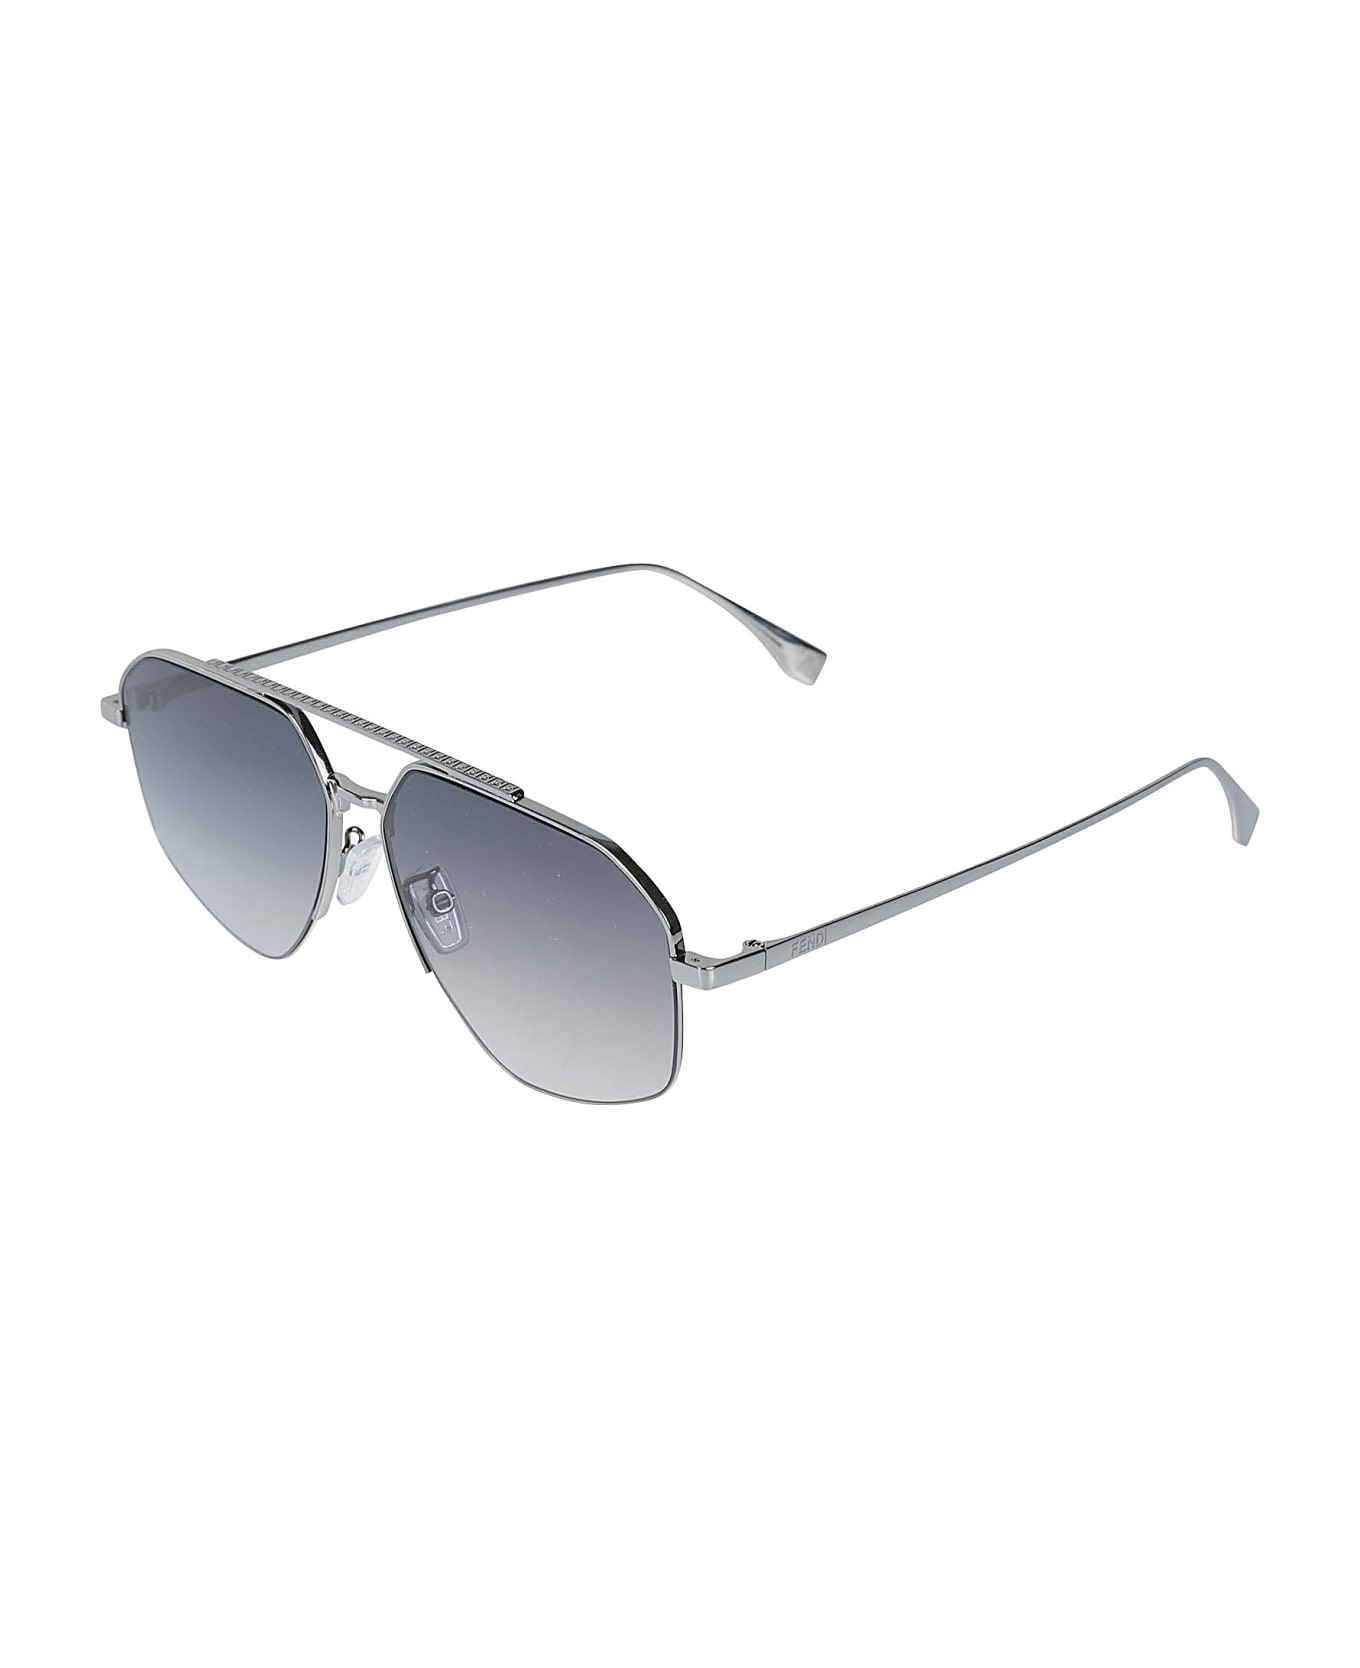 Fendi Eyewear Aviator Sunglasses - Nero